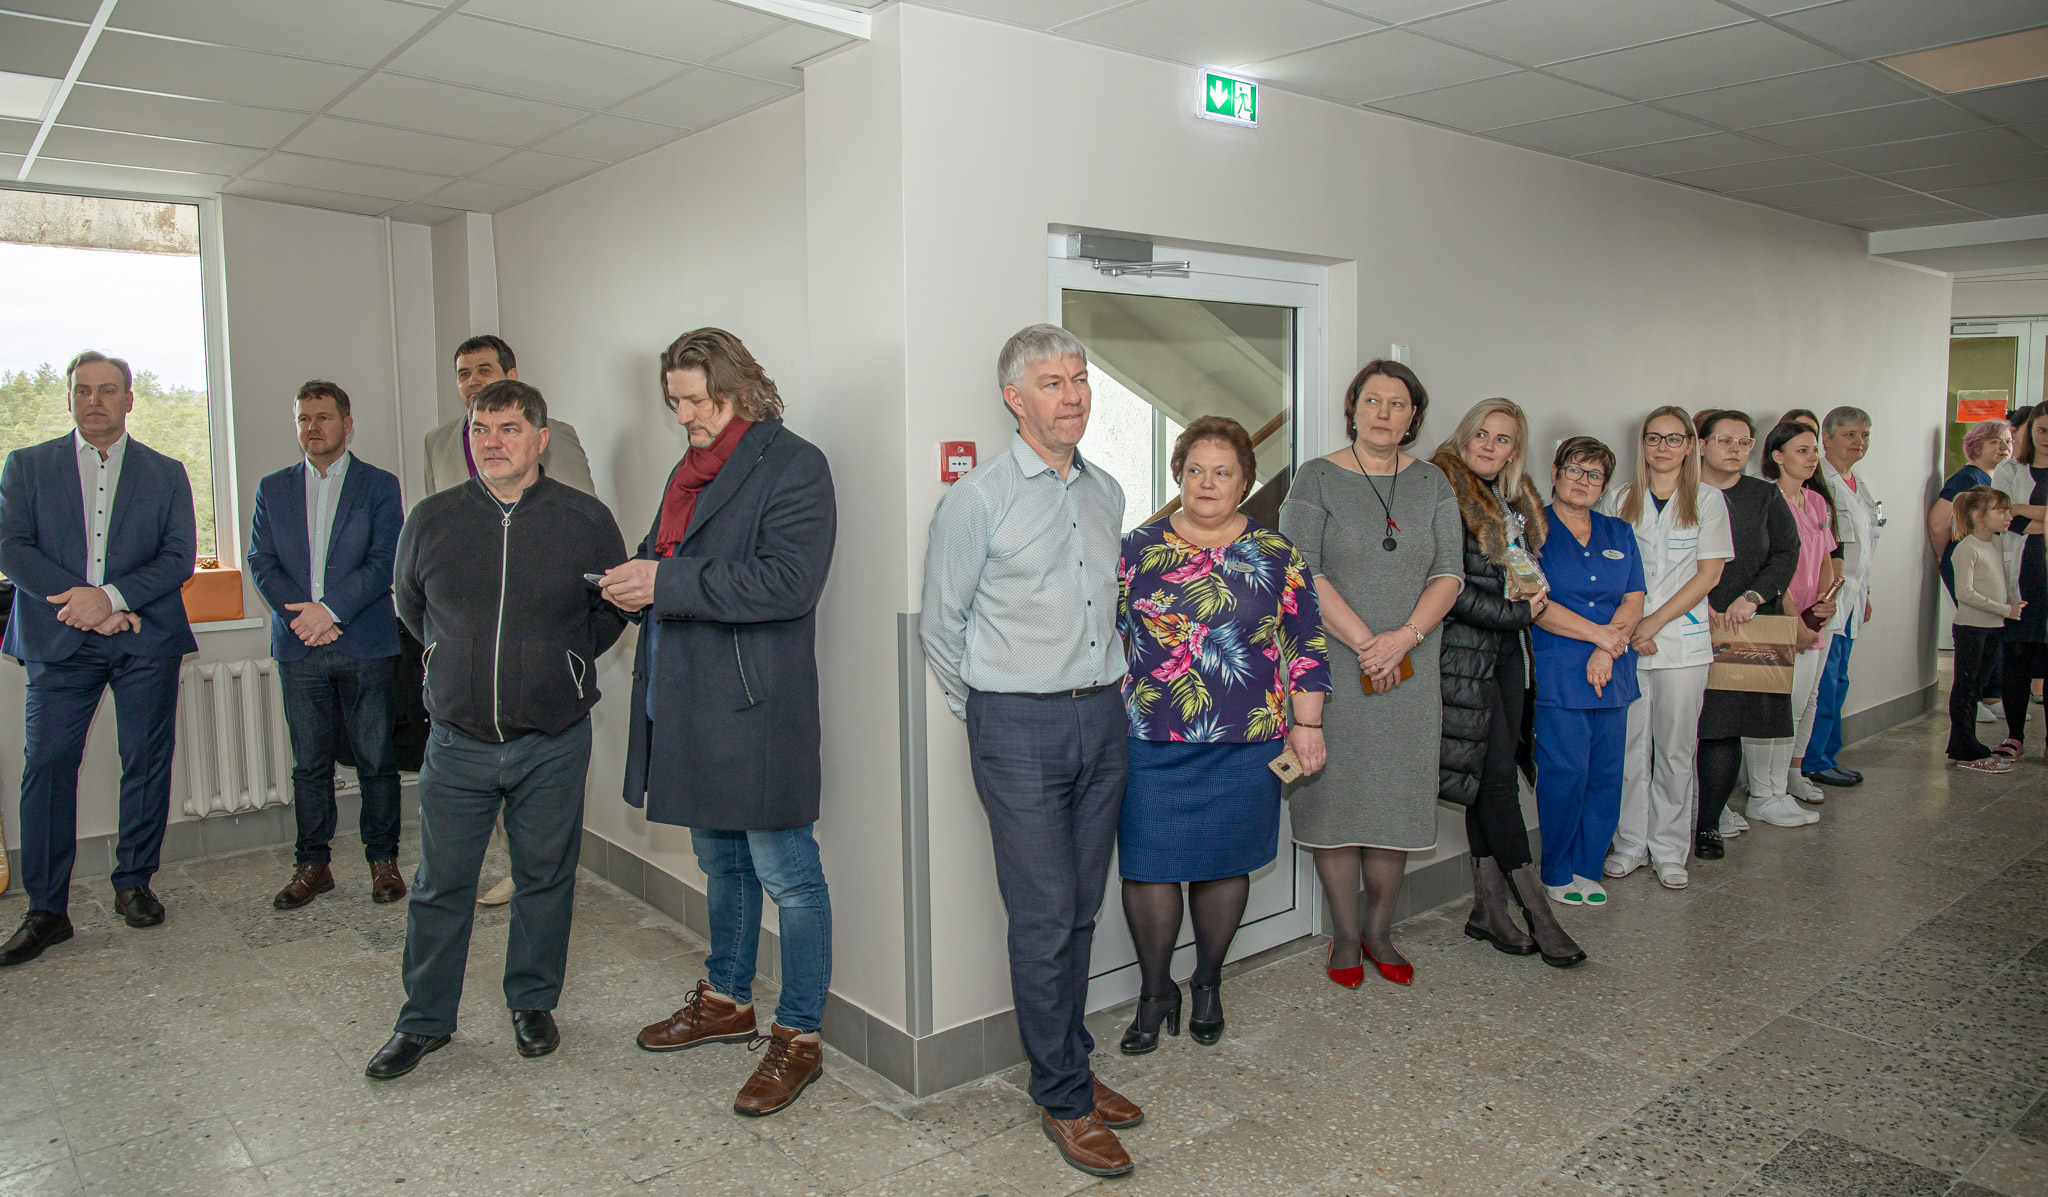 Lõuna-Eesti haigla avas uuenenud kirurgiaosakonna FOTOD: Aigar Nagel 